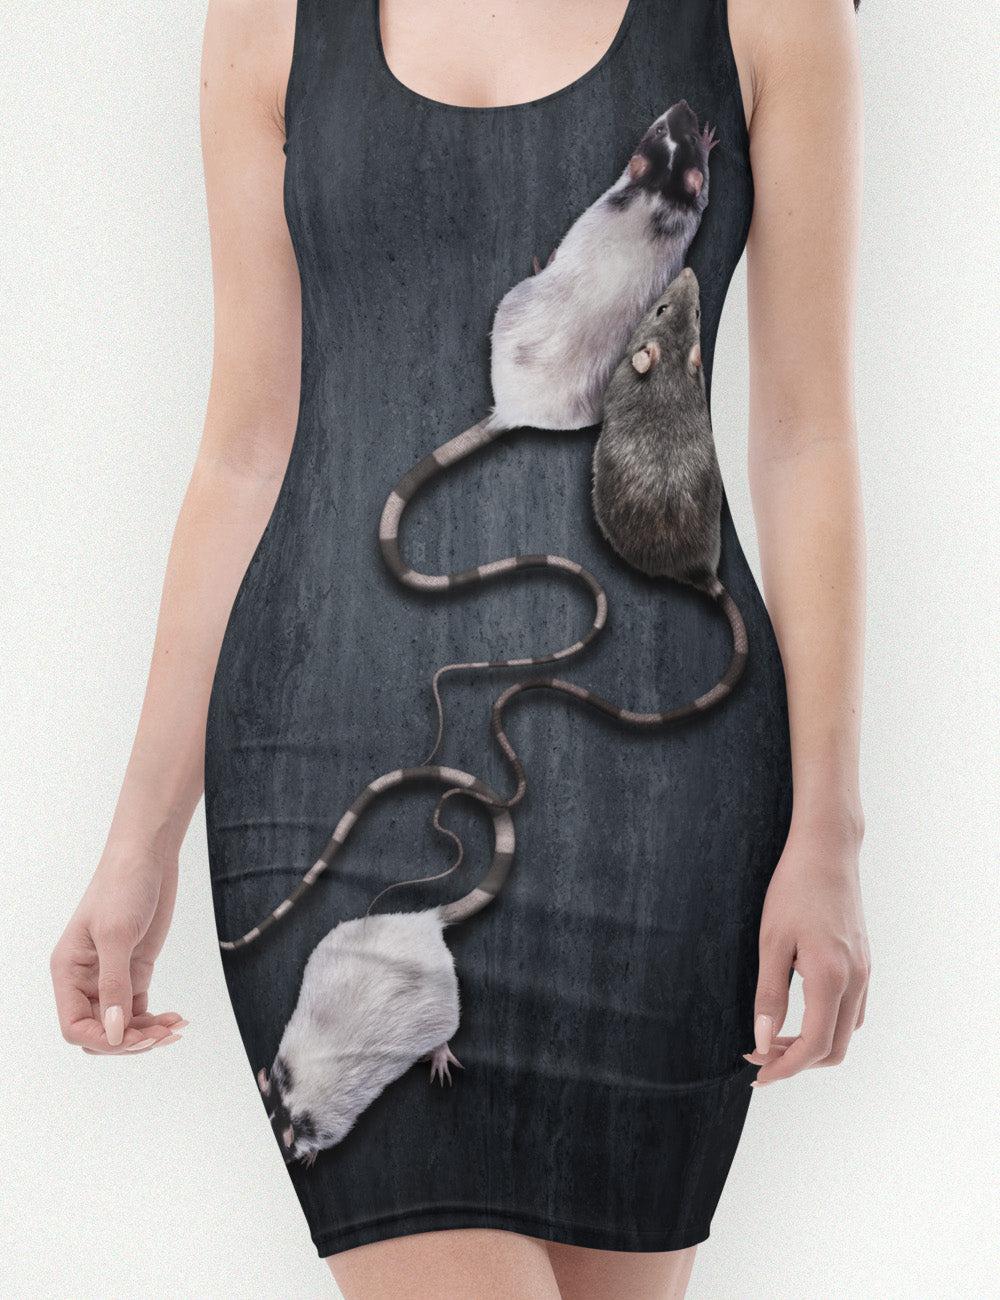 rat dress